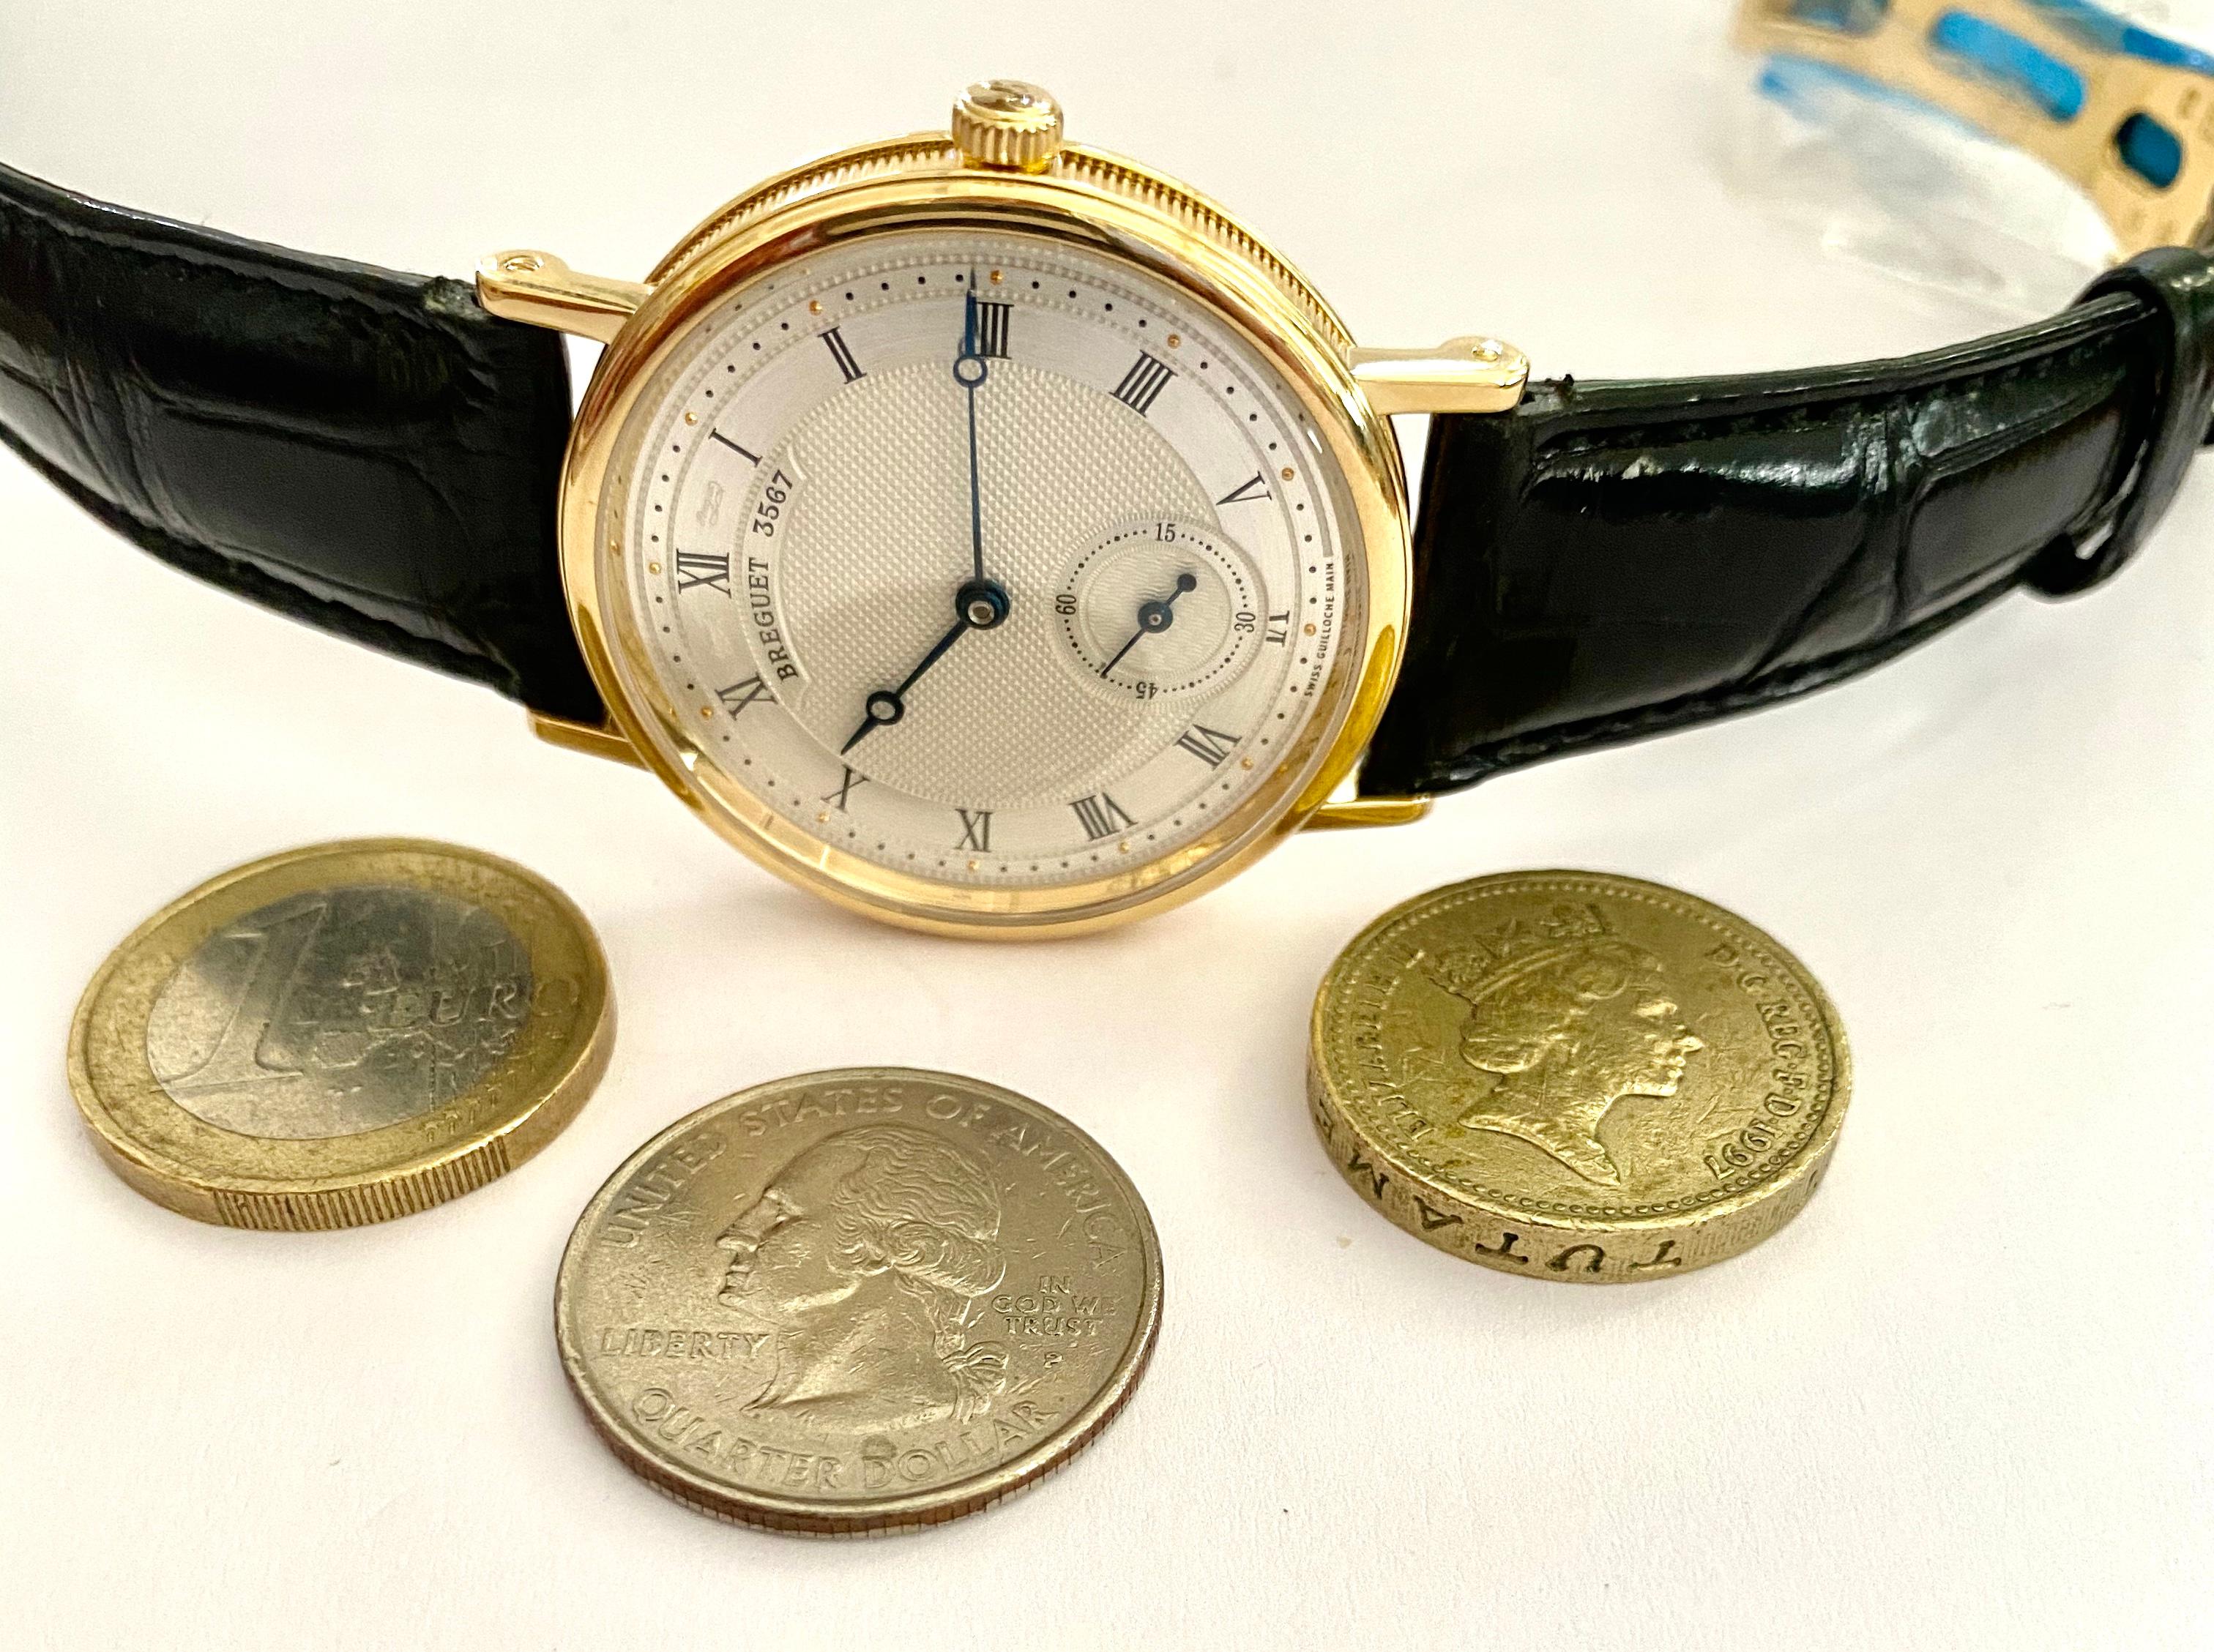 Breguet Watch, 18 Karat Yellow Gold, Nr 5907 